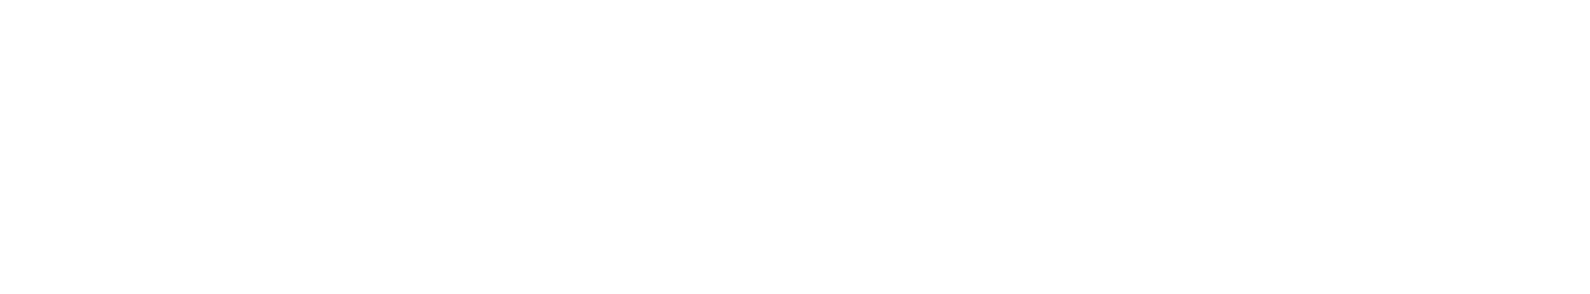 Meggitt logo grand pour les fonds sombres (PNG transparent)